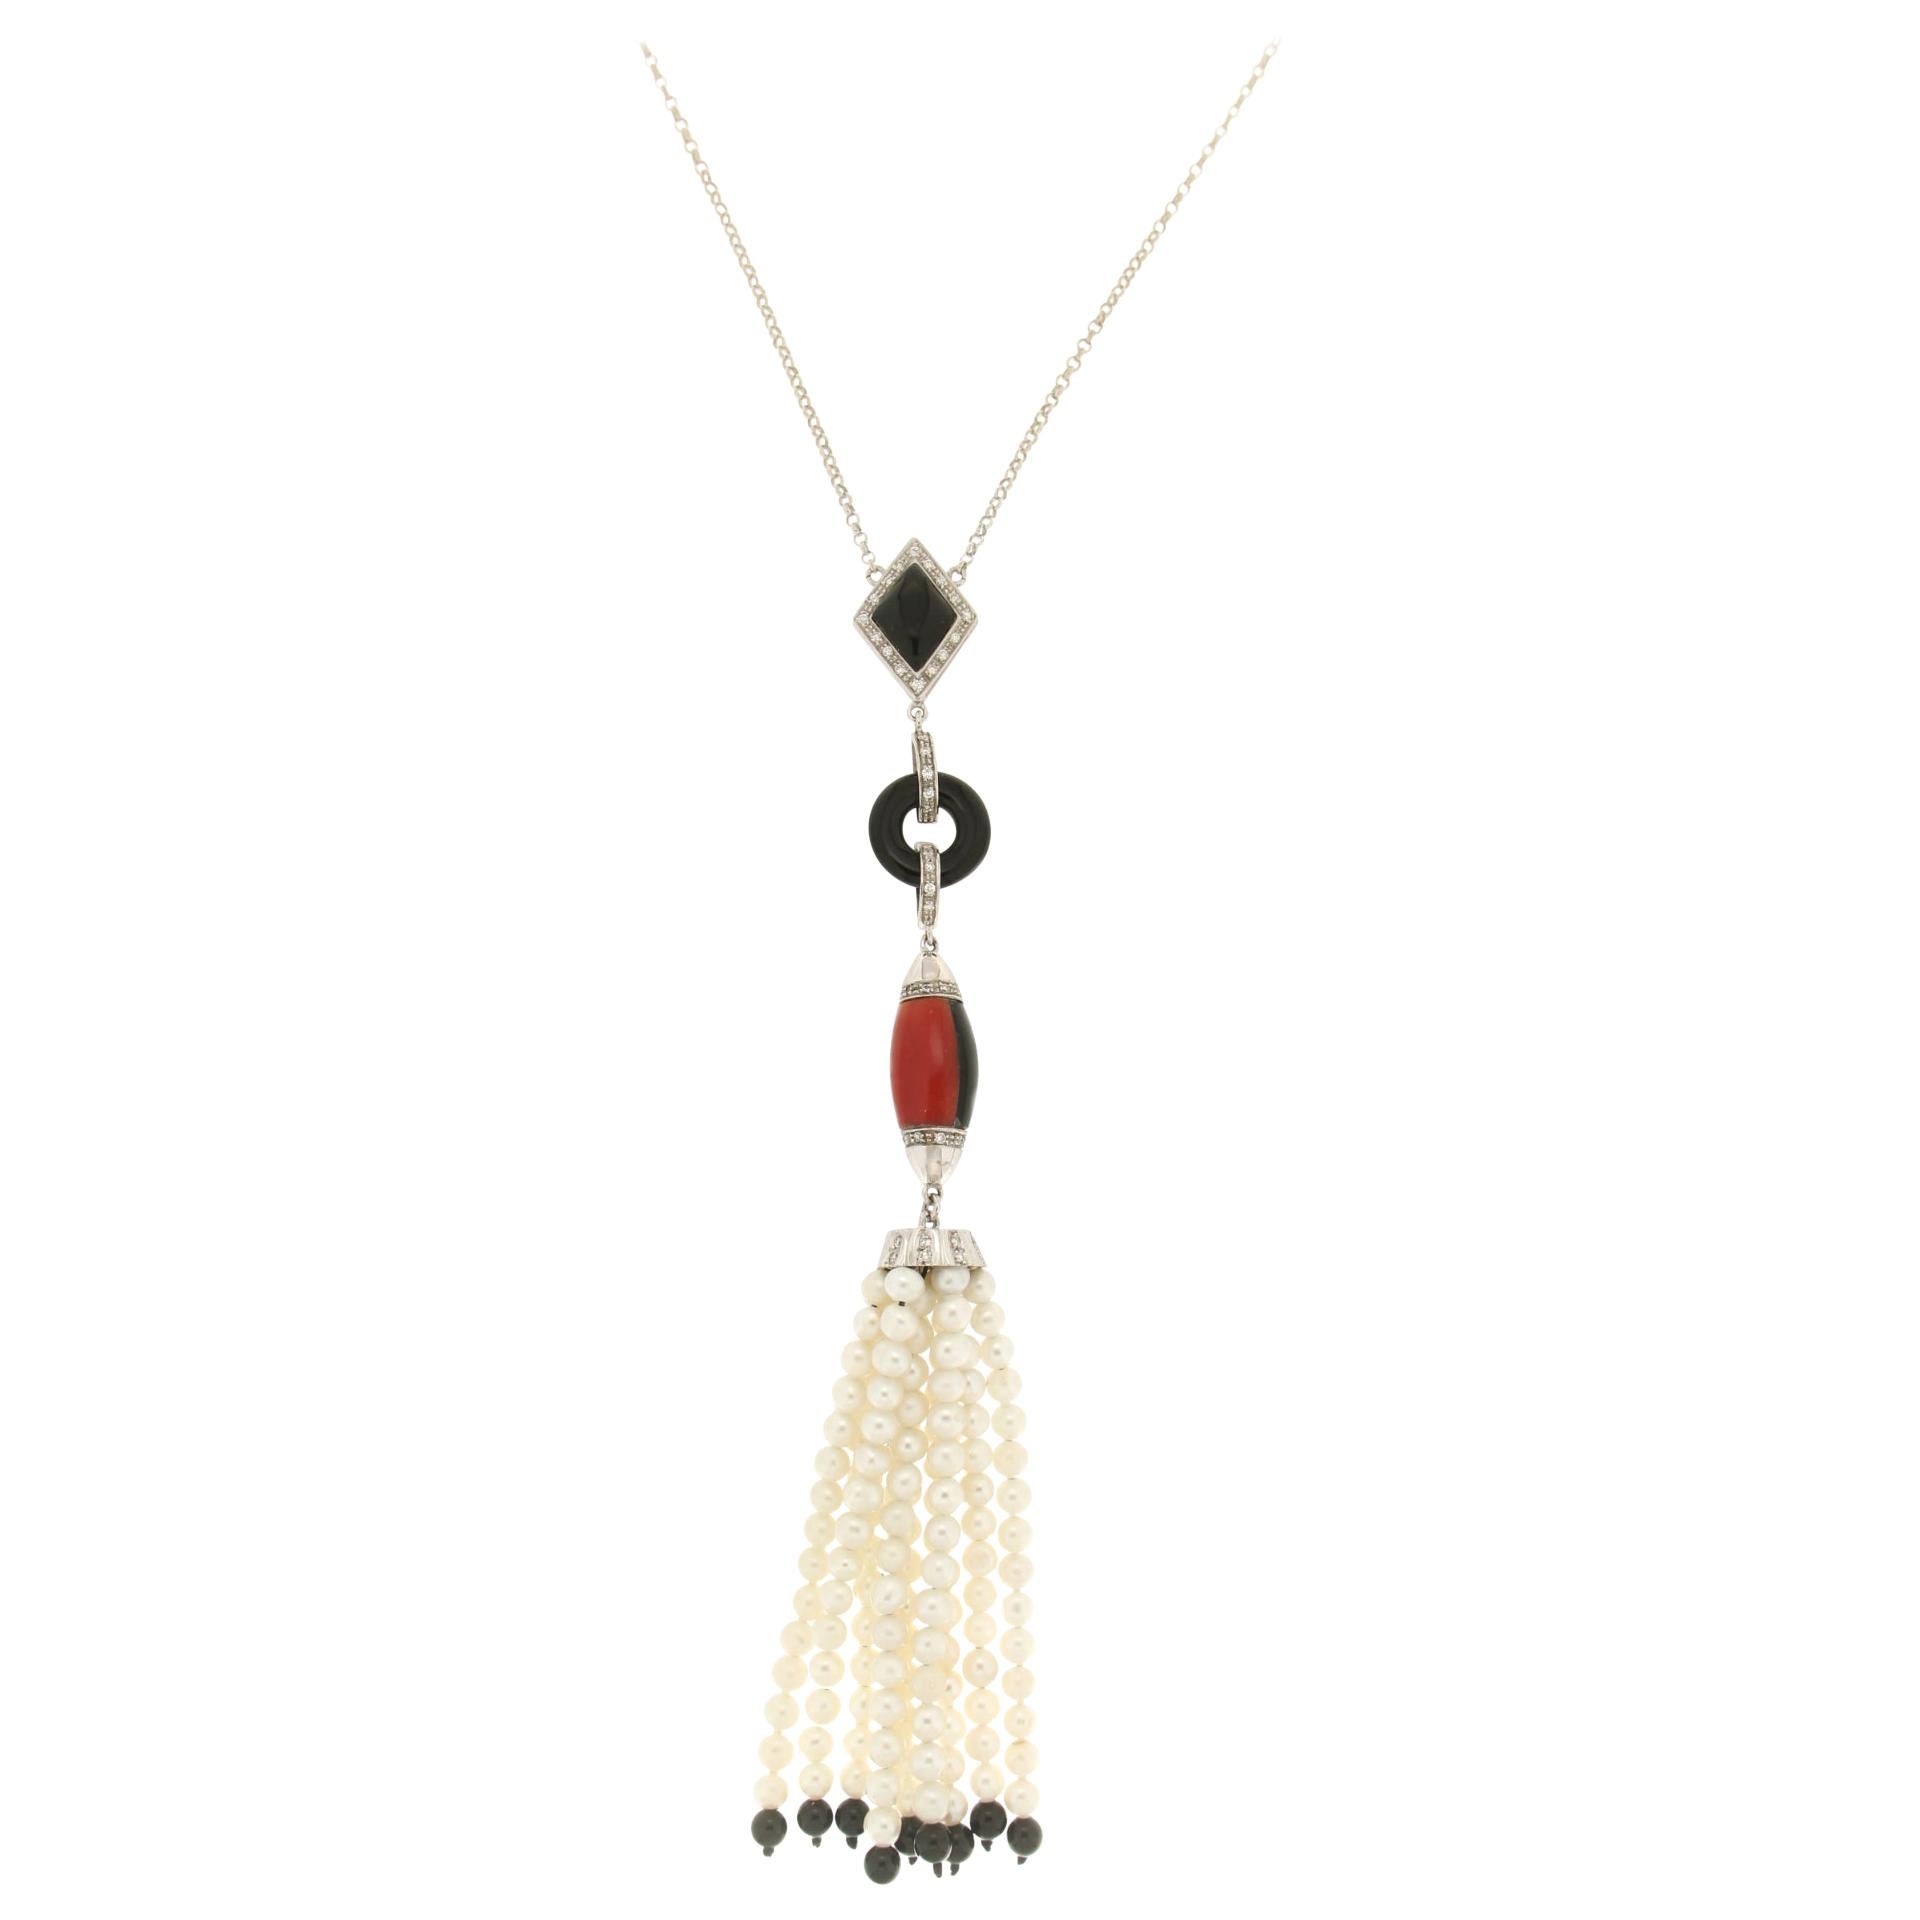 Collier pendentif artisanal en corail, or blanc 18 carats, onyx, diamants et perles